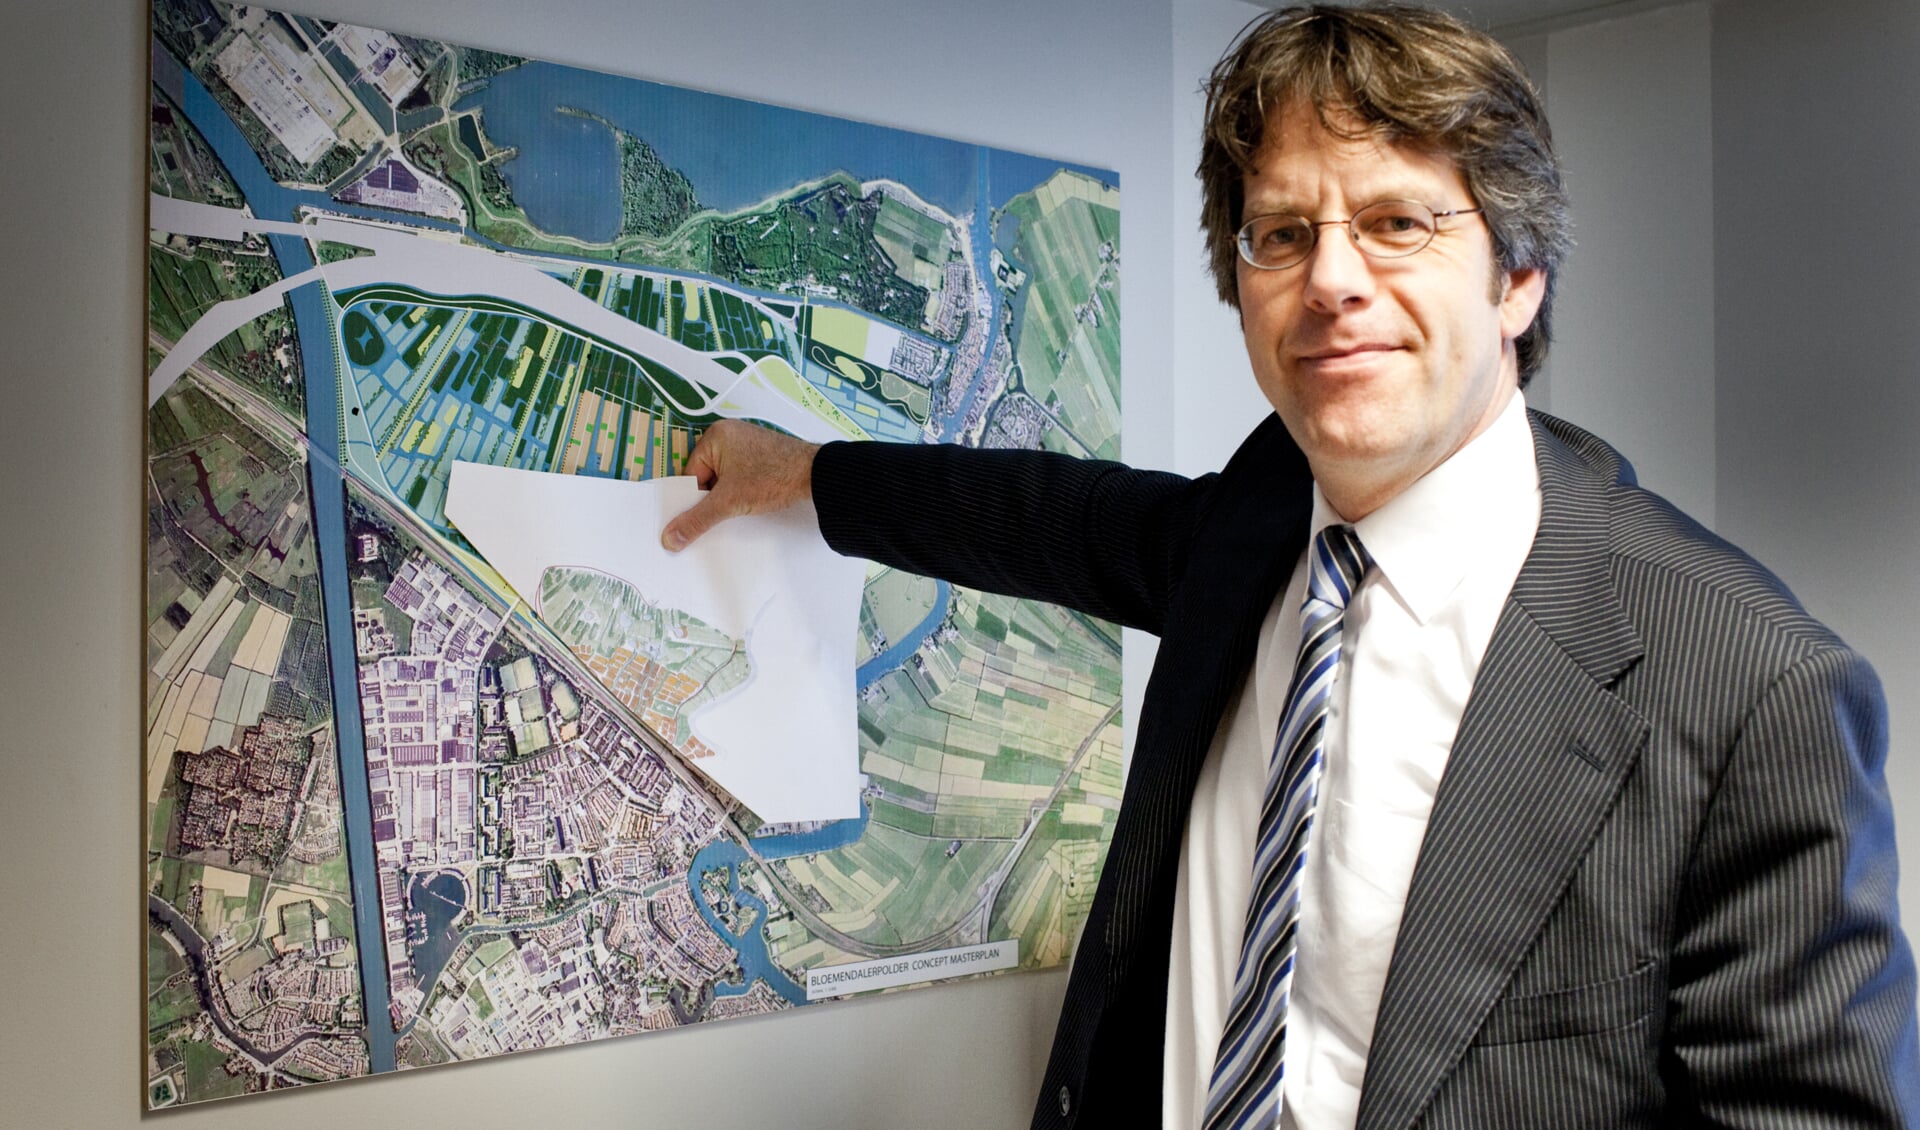 Wethouder Van der Hoeven dolblij met akkoord bouwplan